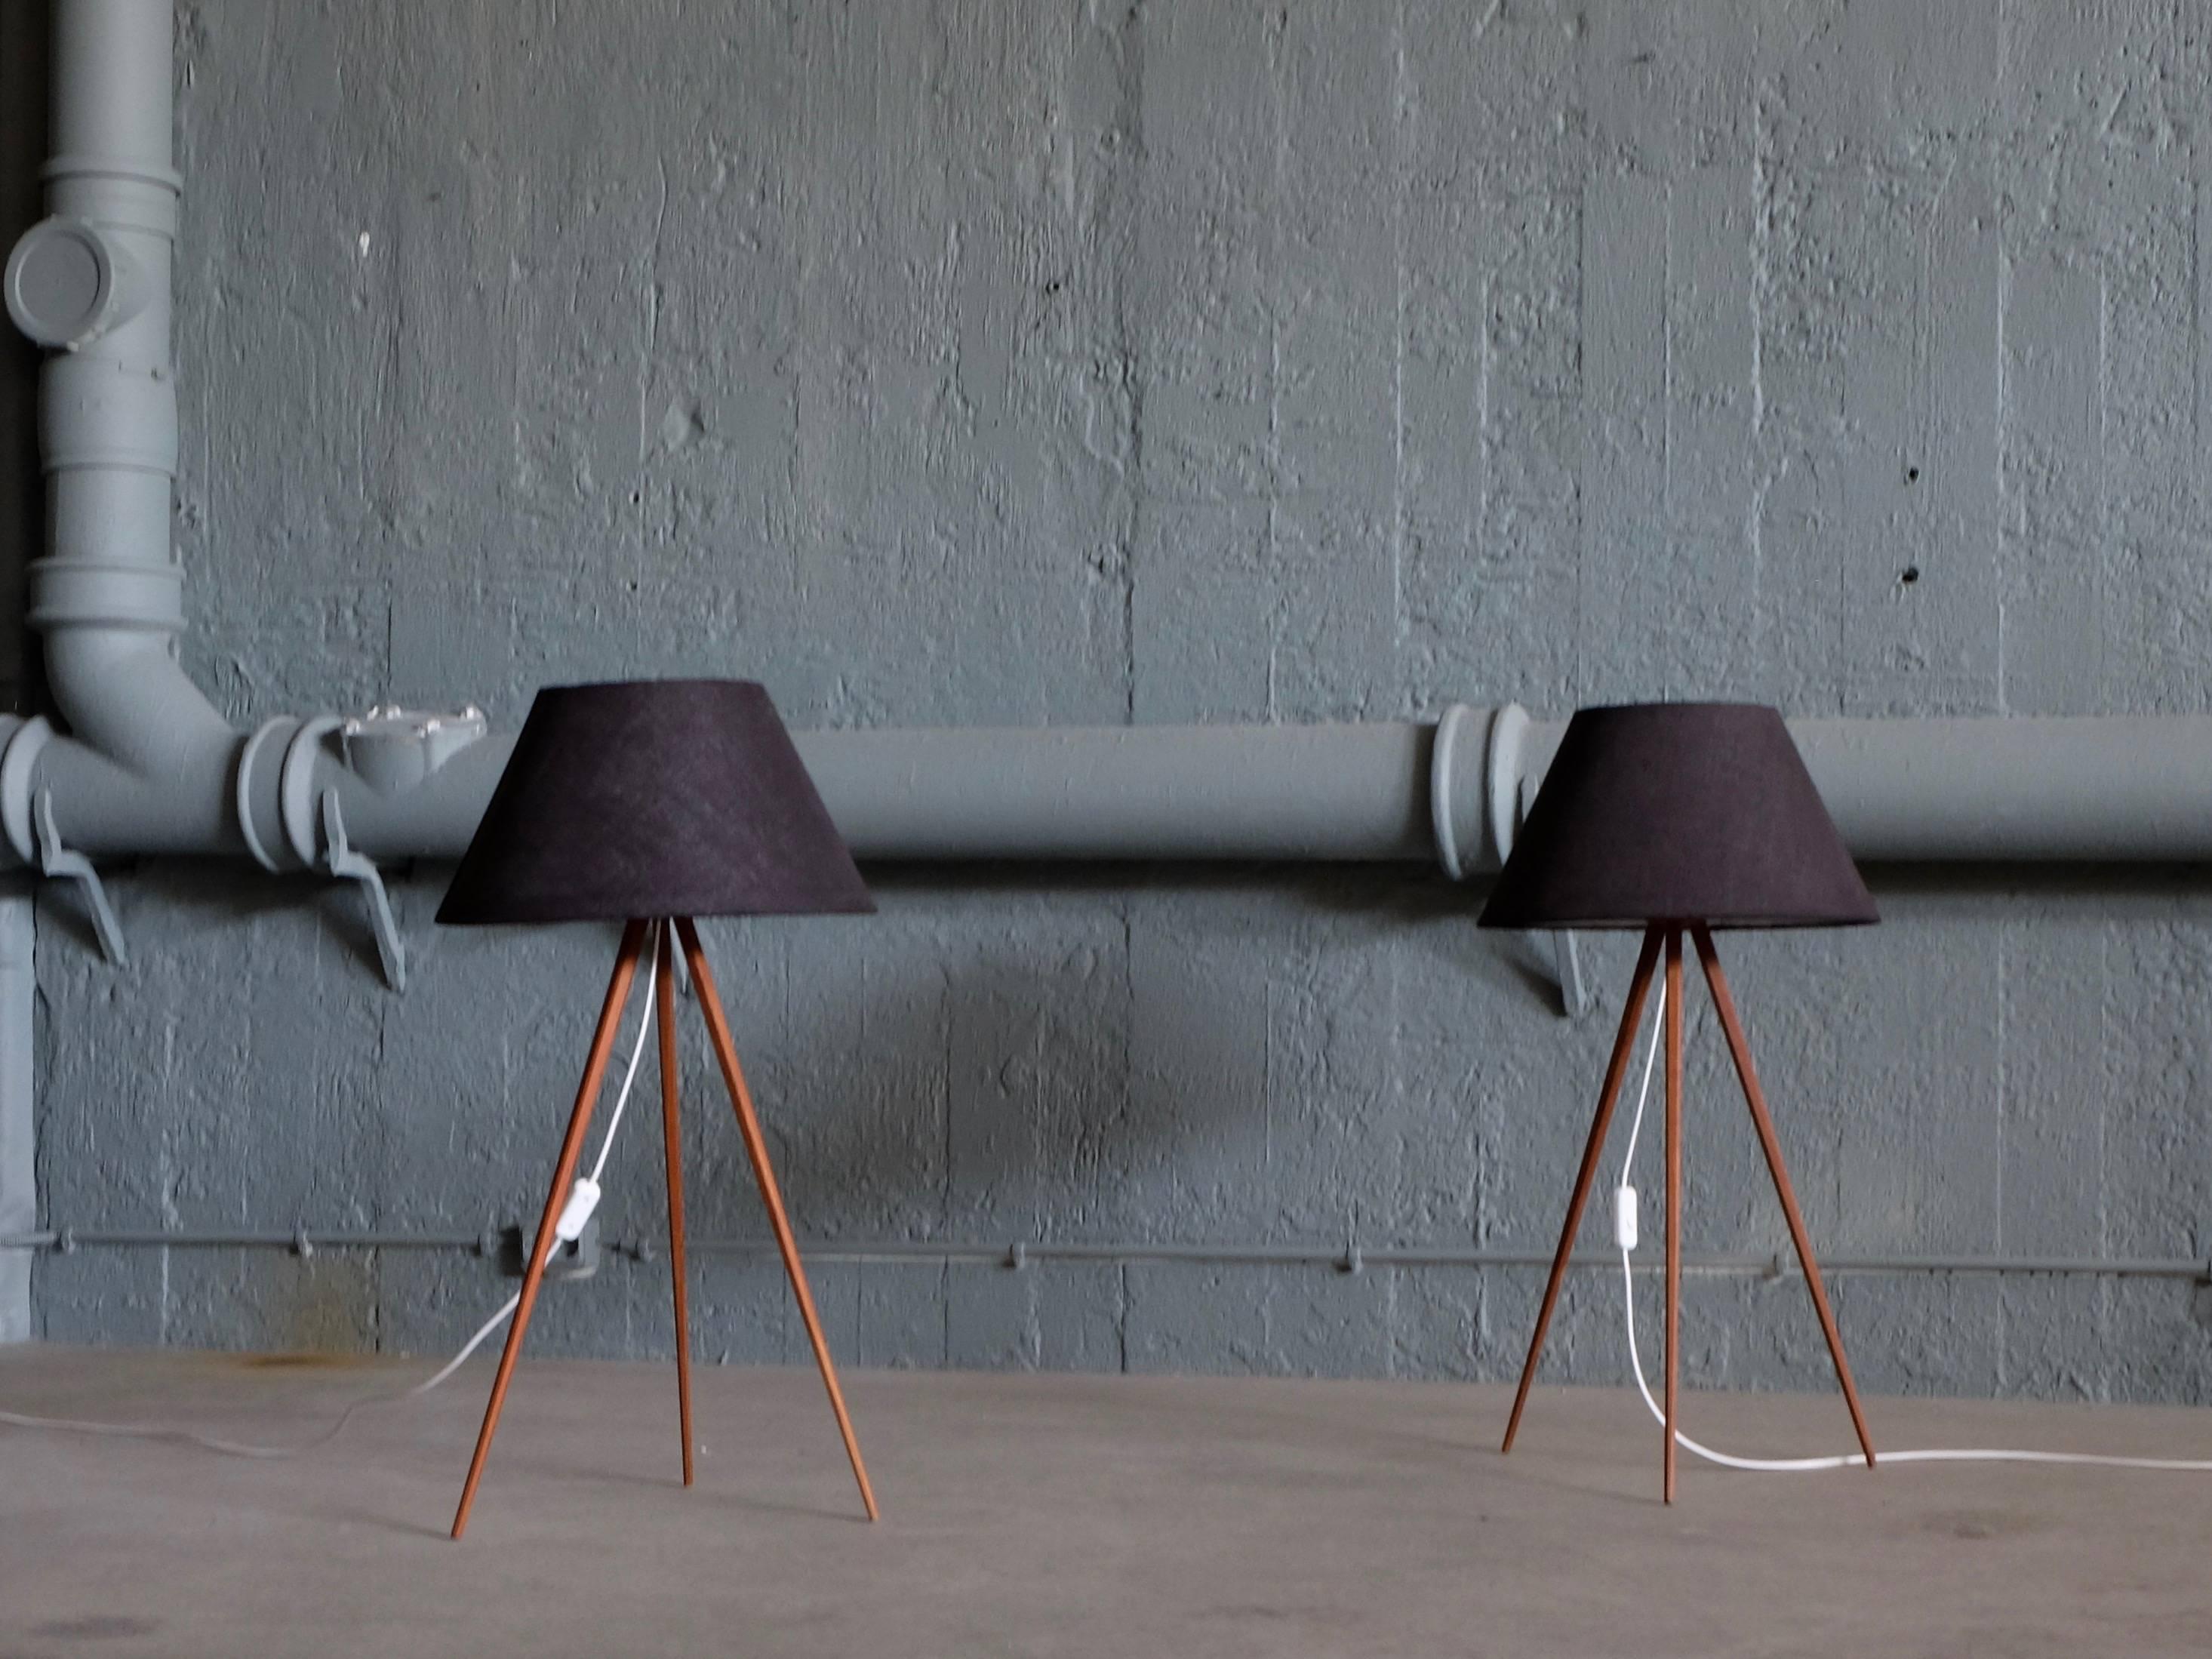 Seltenes Paar schwedischer Tisch-/Stehlampen, kann als beides verwendet werden, optional.
Neue Verkabelung. Ausgezeichneter Zustand.